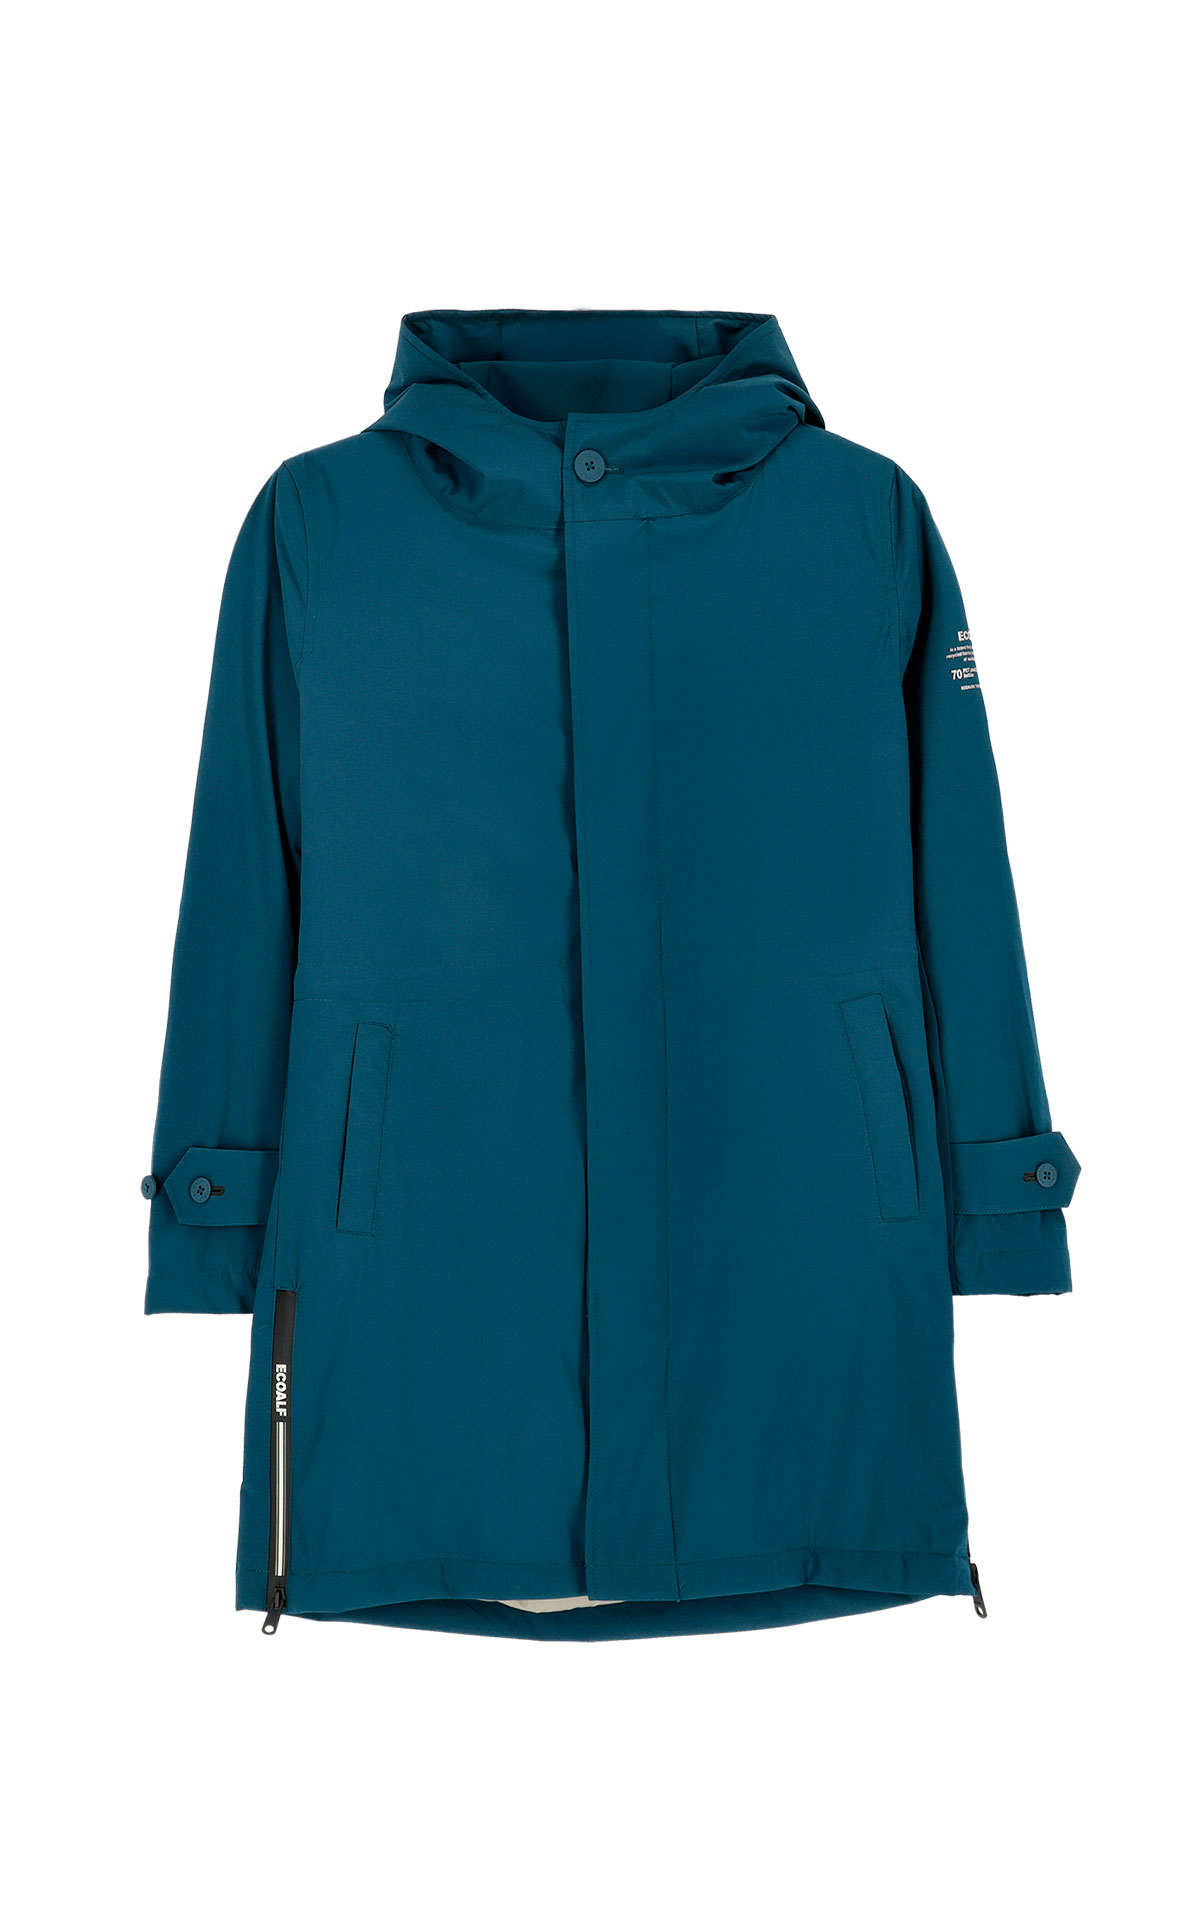 Ecoalf navy blue trench coat